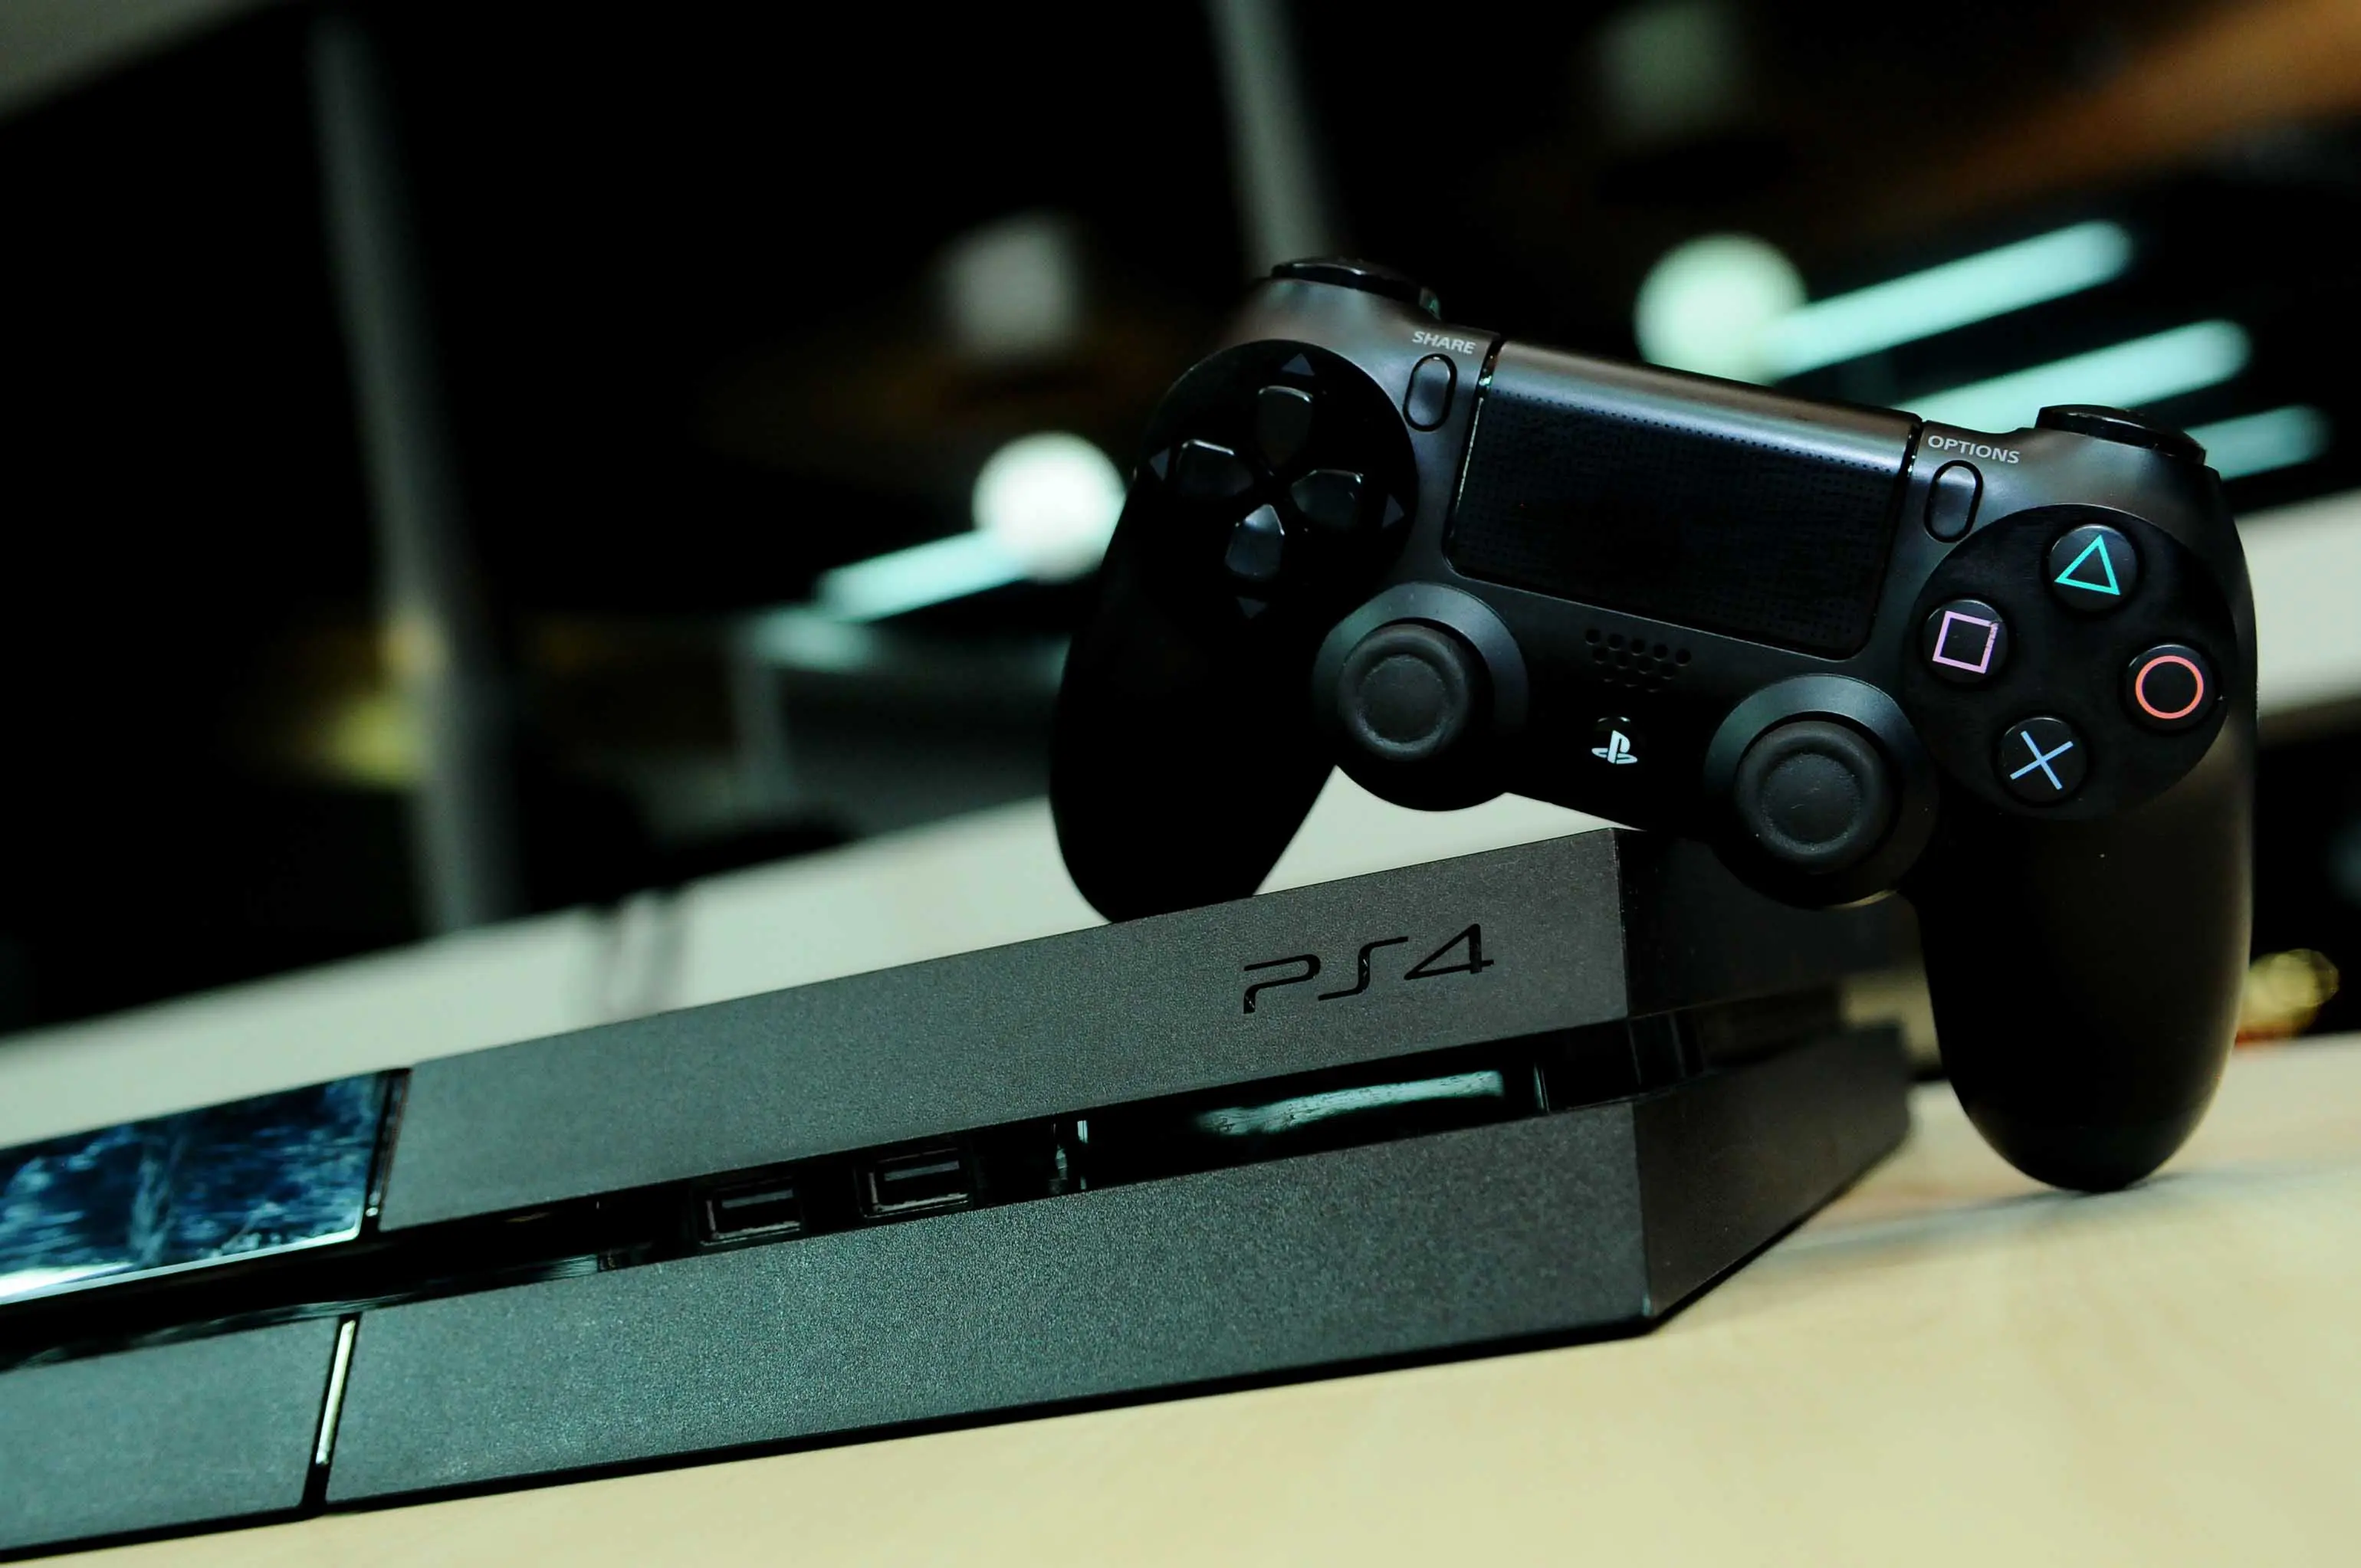 Konsol game generasi terbaru dari Sony ini hadir dengan sejumlah keunggulan dibanding pendahulunya, PlayStation 3 (PS3).